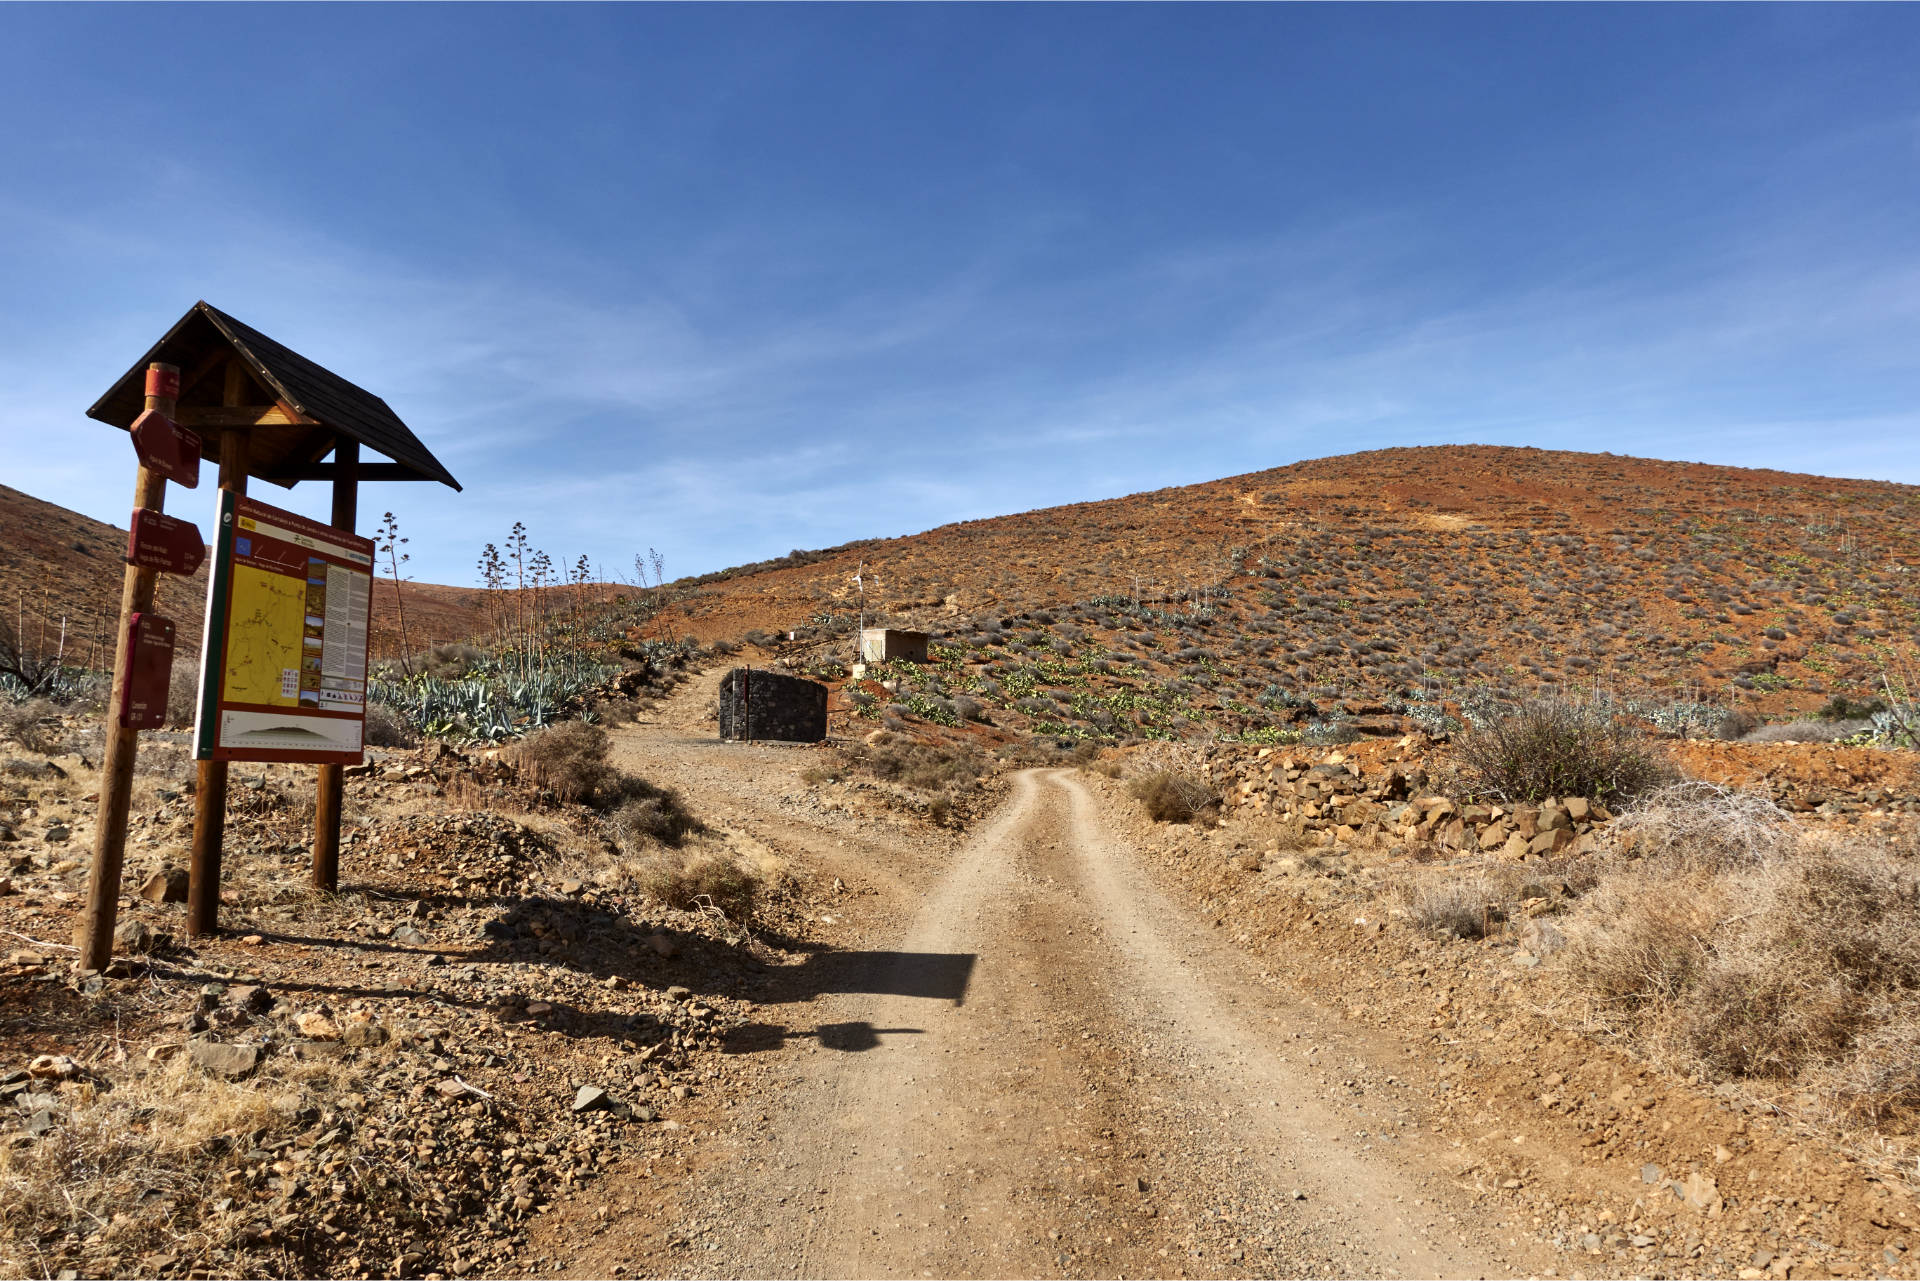 Beginn des Camino Natural de Fuerteventura im Barranco de los Almácigos mit Área de descanso.